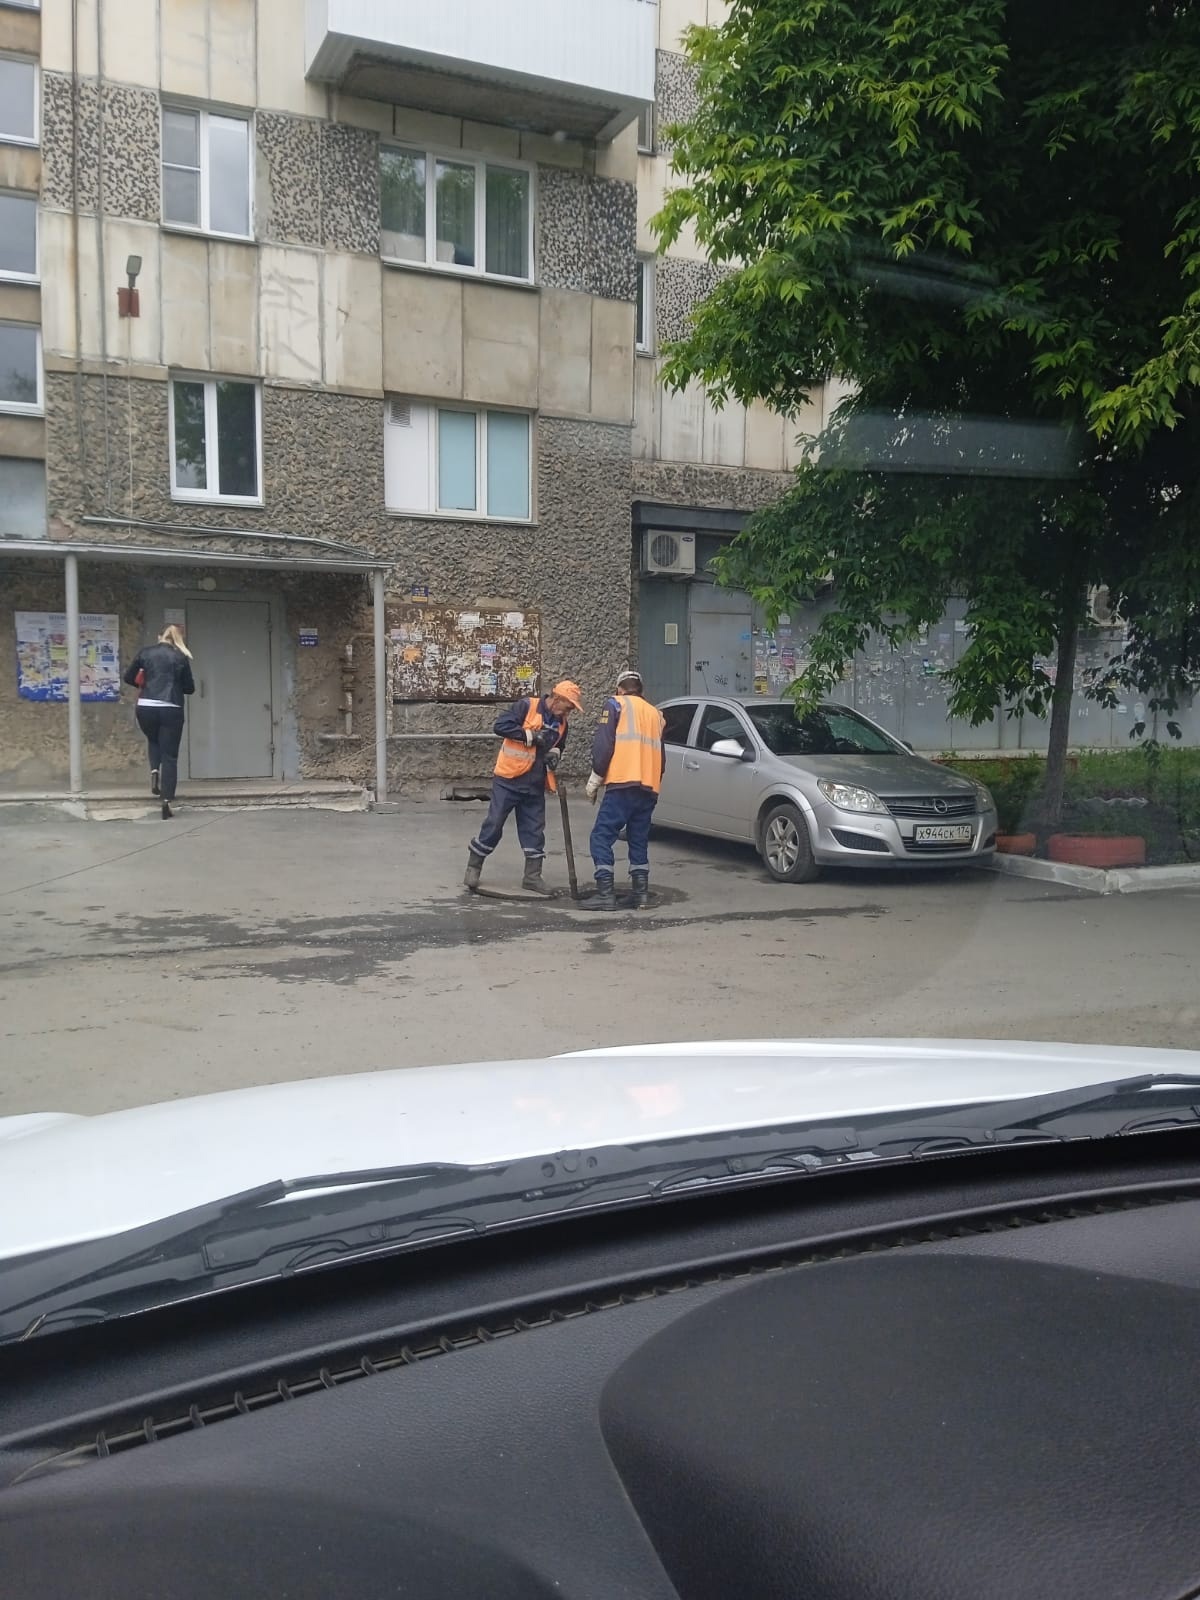 05.07.2022 г. организацией МУП "ПОВВ" были выполнены работы по прочистке дворового колодца по по адресу Комарова 110.